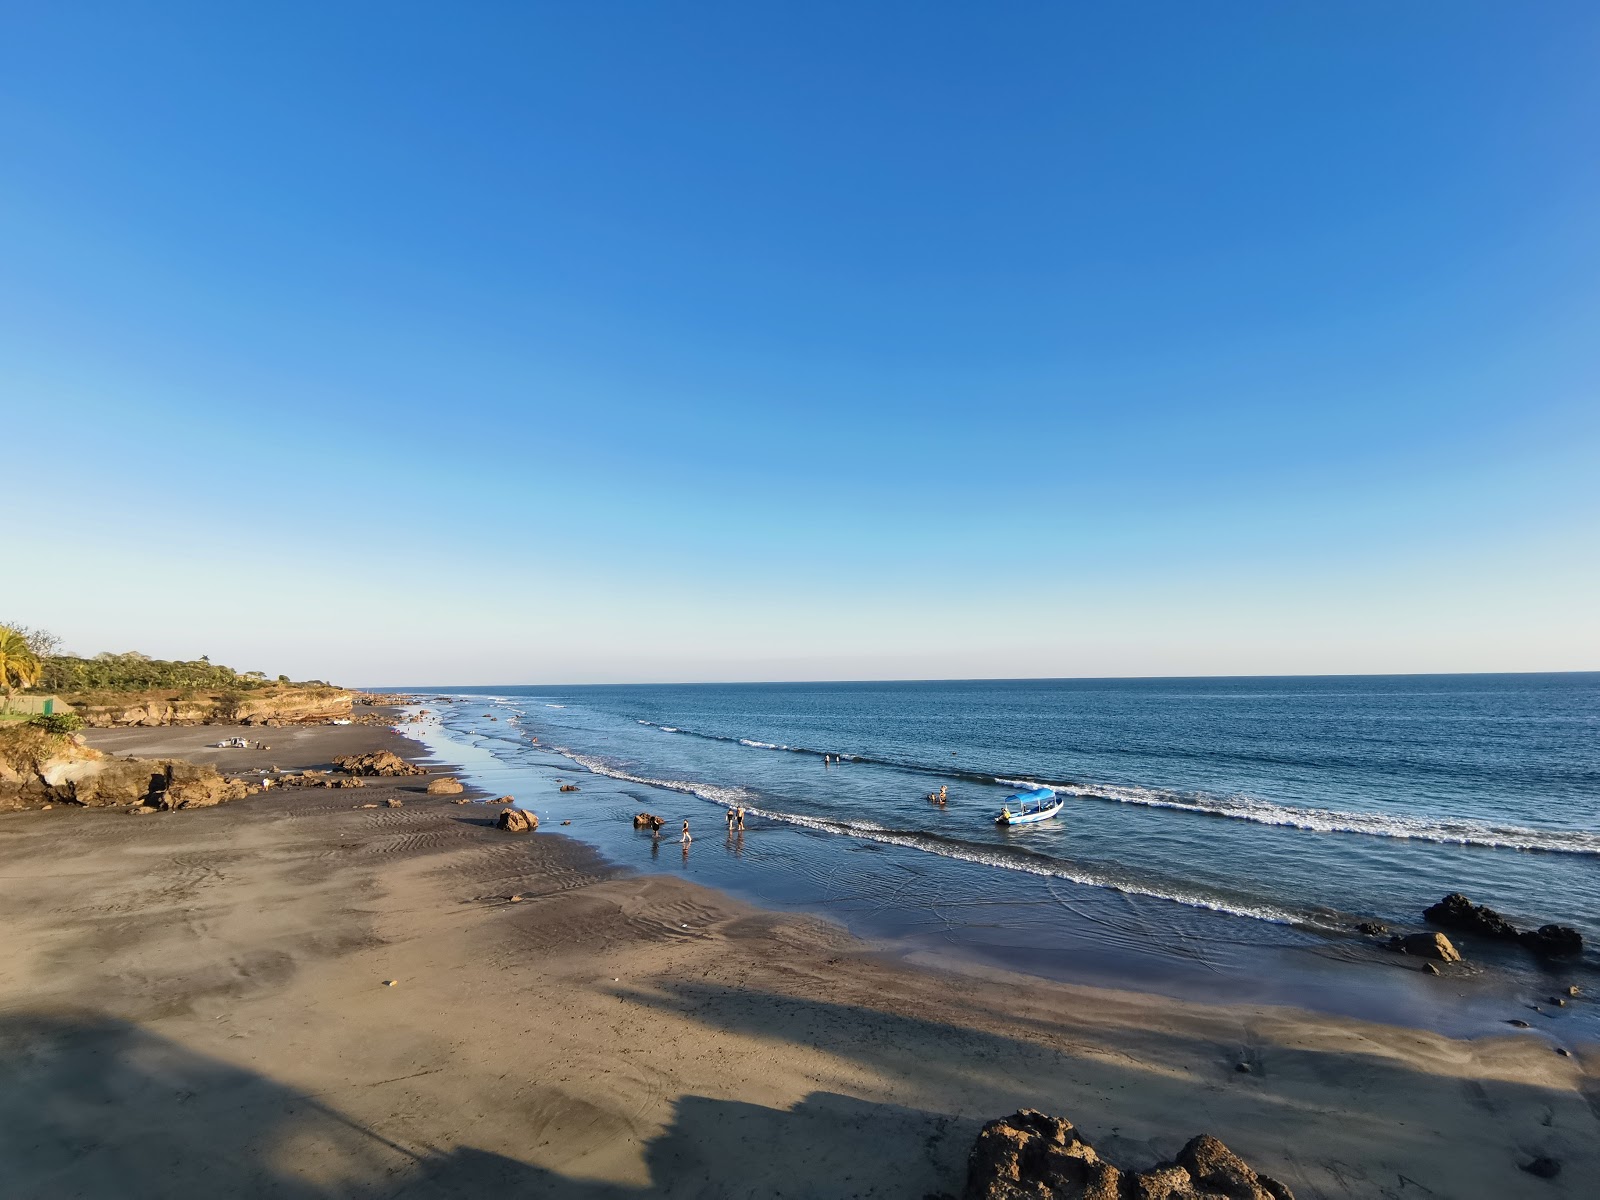 Torola beach'in fotoğrafı gri kum yüzey ile